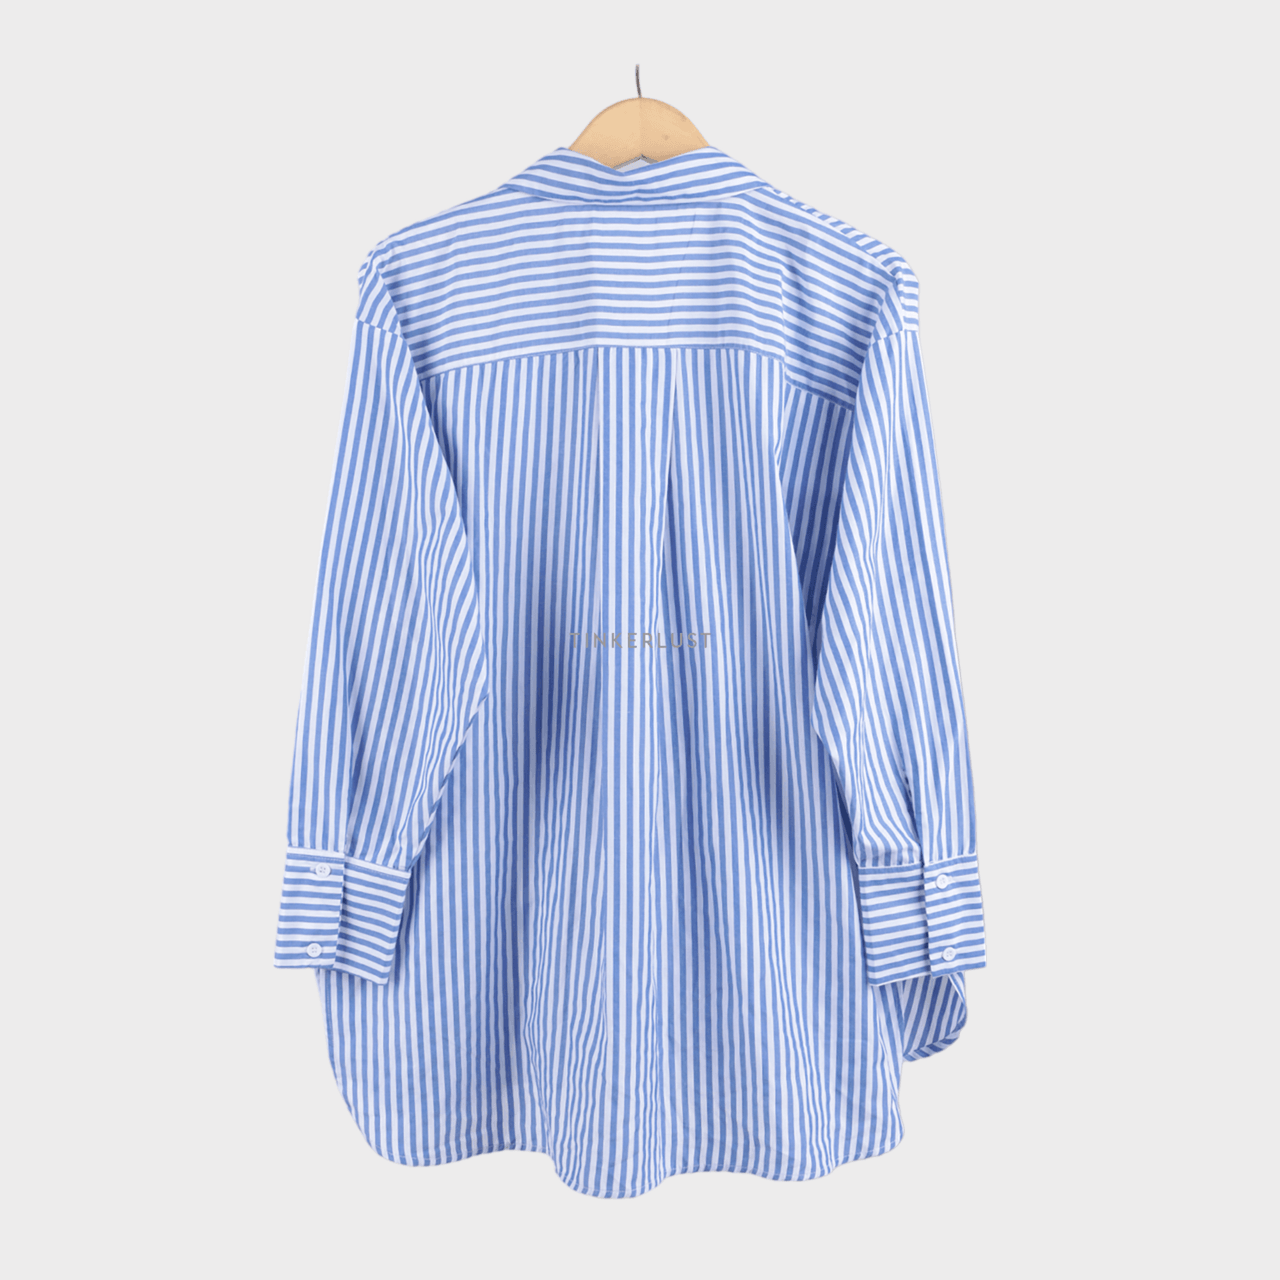 Josephine Anni White & Dark Blue Stripes Shirt